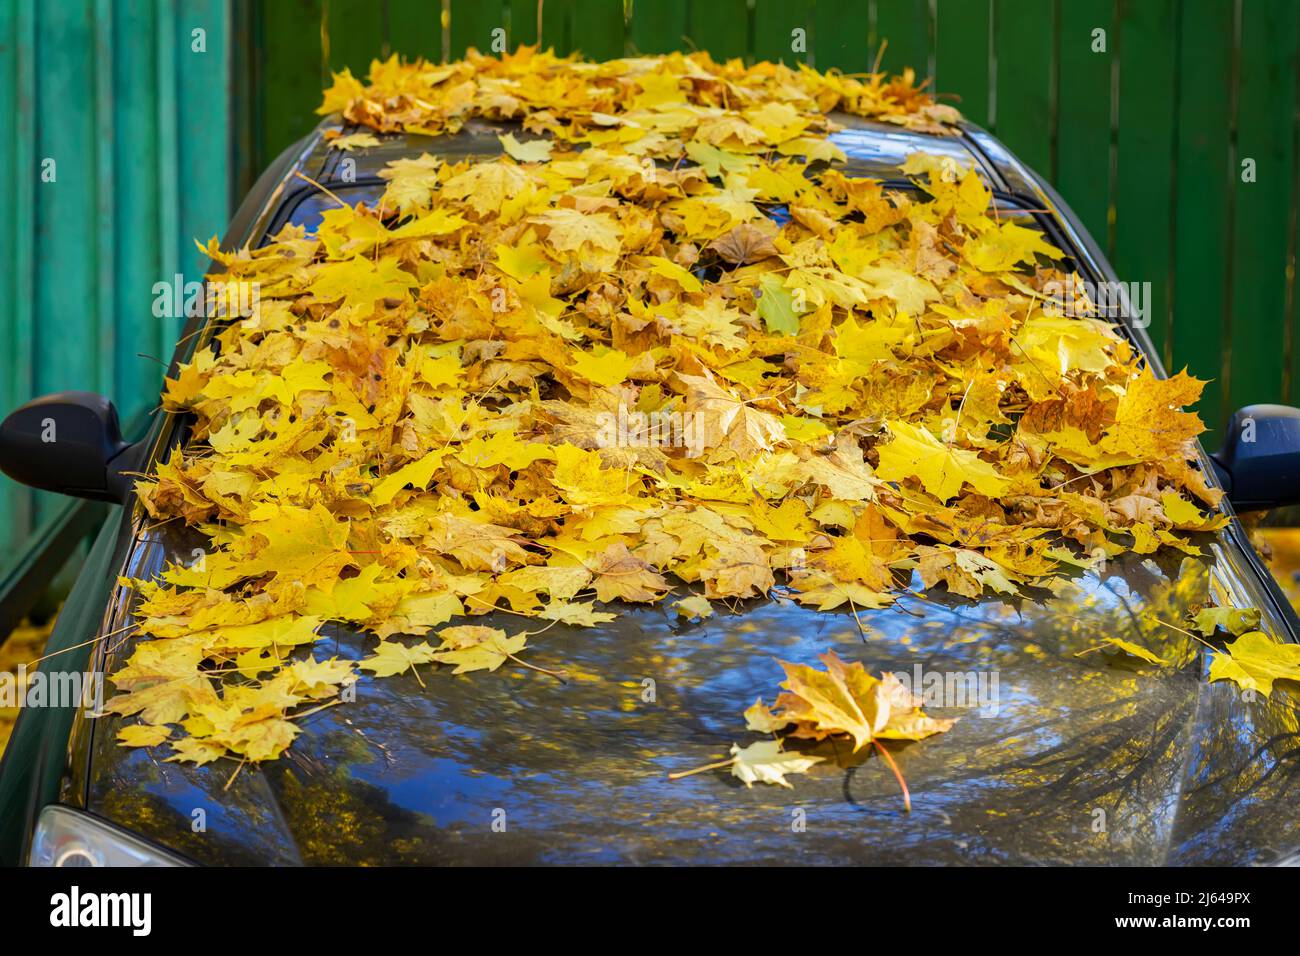 Haufen von gefallenen gelben Blättern auf Stoßstange des Autos Nahaufnahme Stockfoto